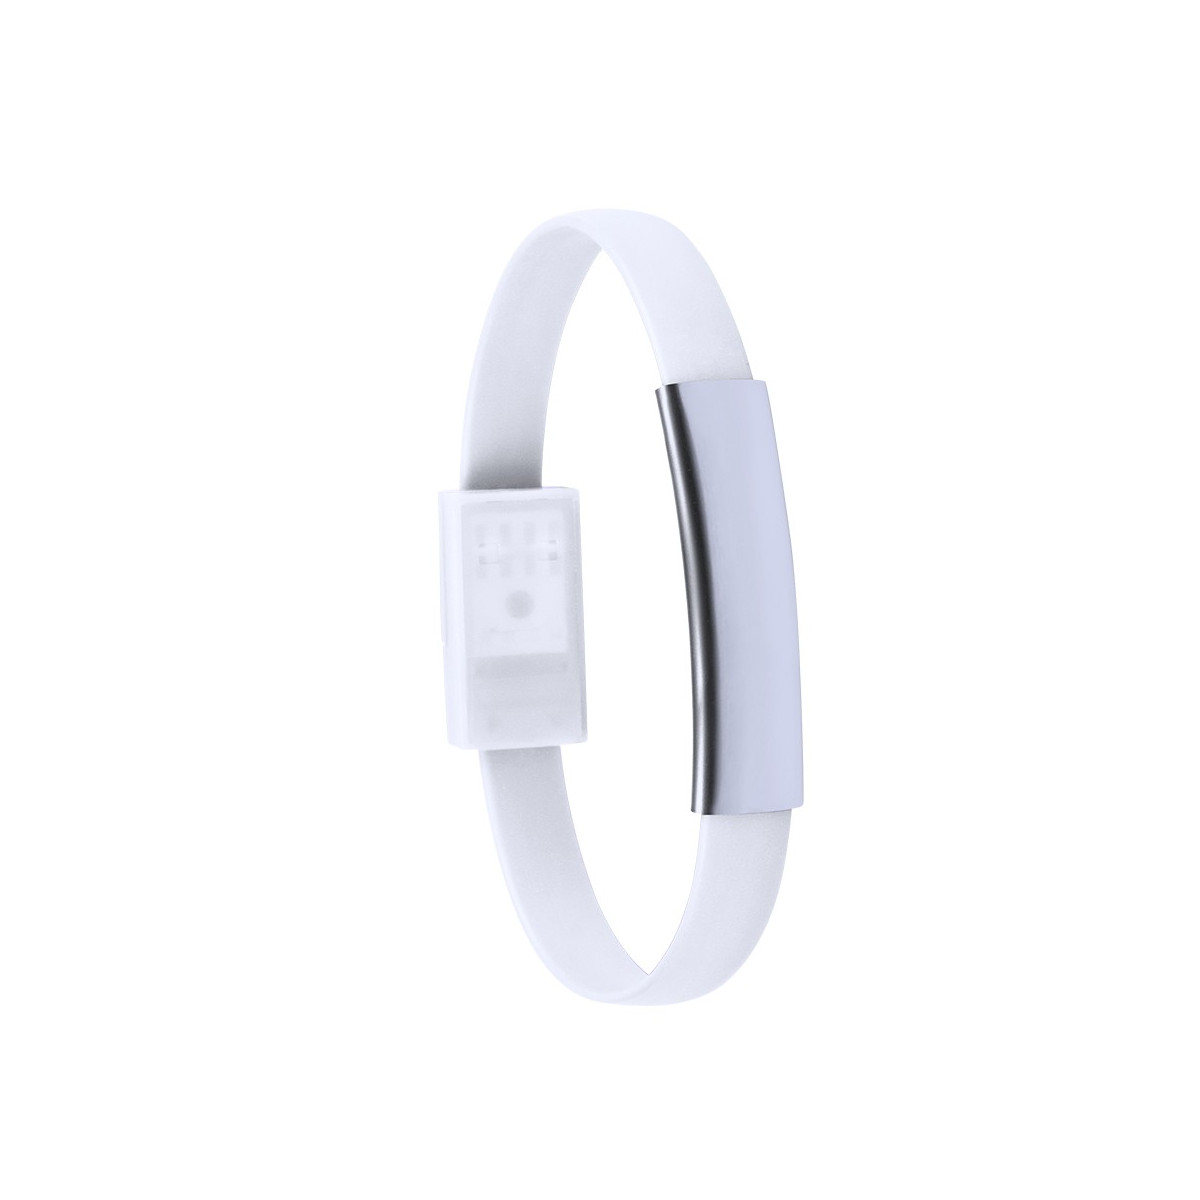 Vhbw Chargeur avec câble Micro USB pour montre Montre Smartwatch montre- bracelet Garmin Forerunner 220 GPS en cours d'exécution. | Leroy Merlin